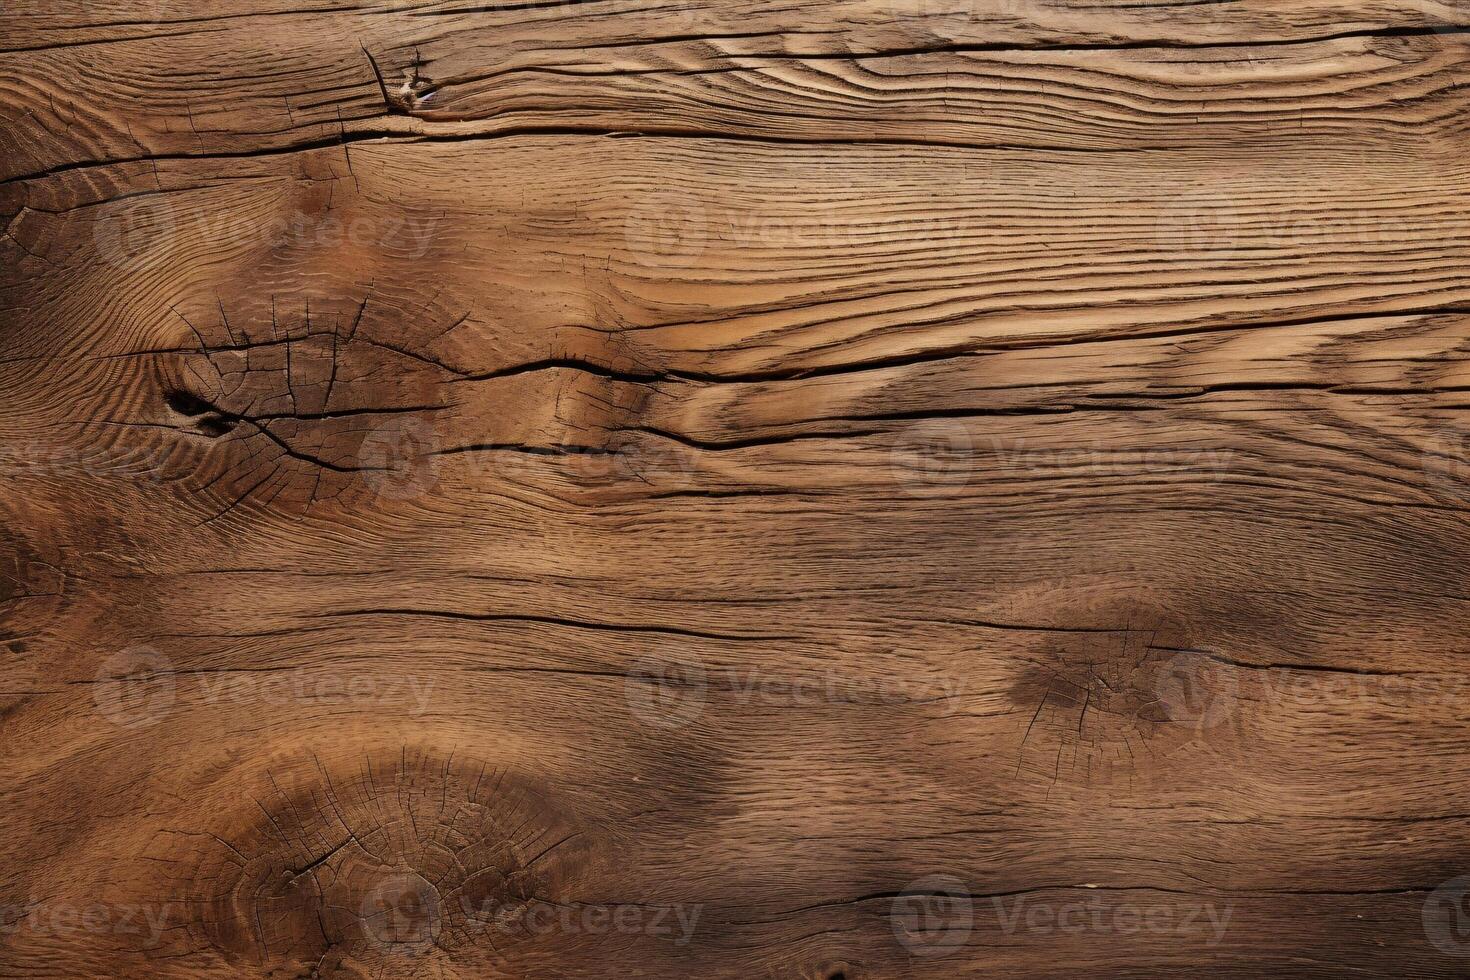 braun Holz Textur, braun hölzern Textur, braun Holz Hintergrund, braun Holz Hintergrund, einfach Holz Textur, Holz Hintergrund, foto